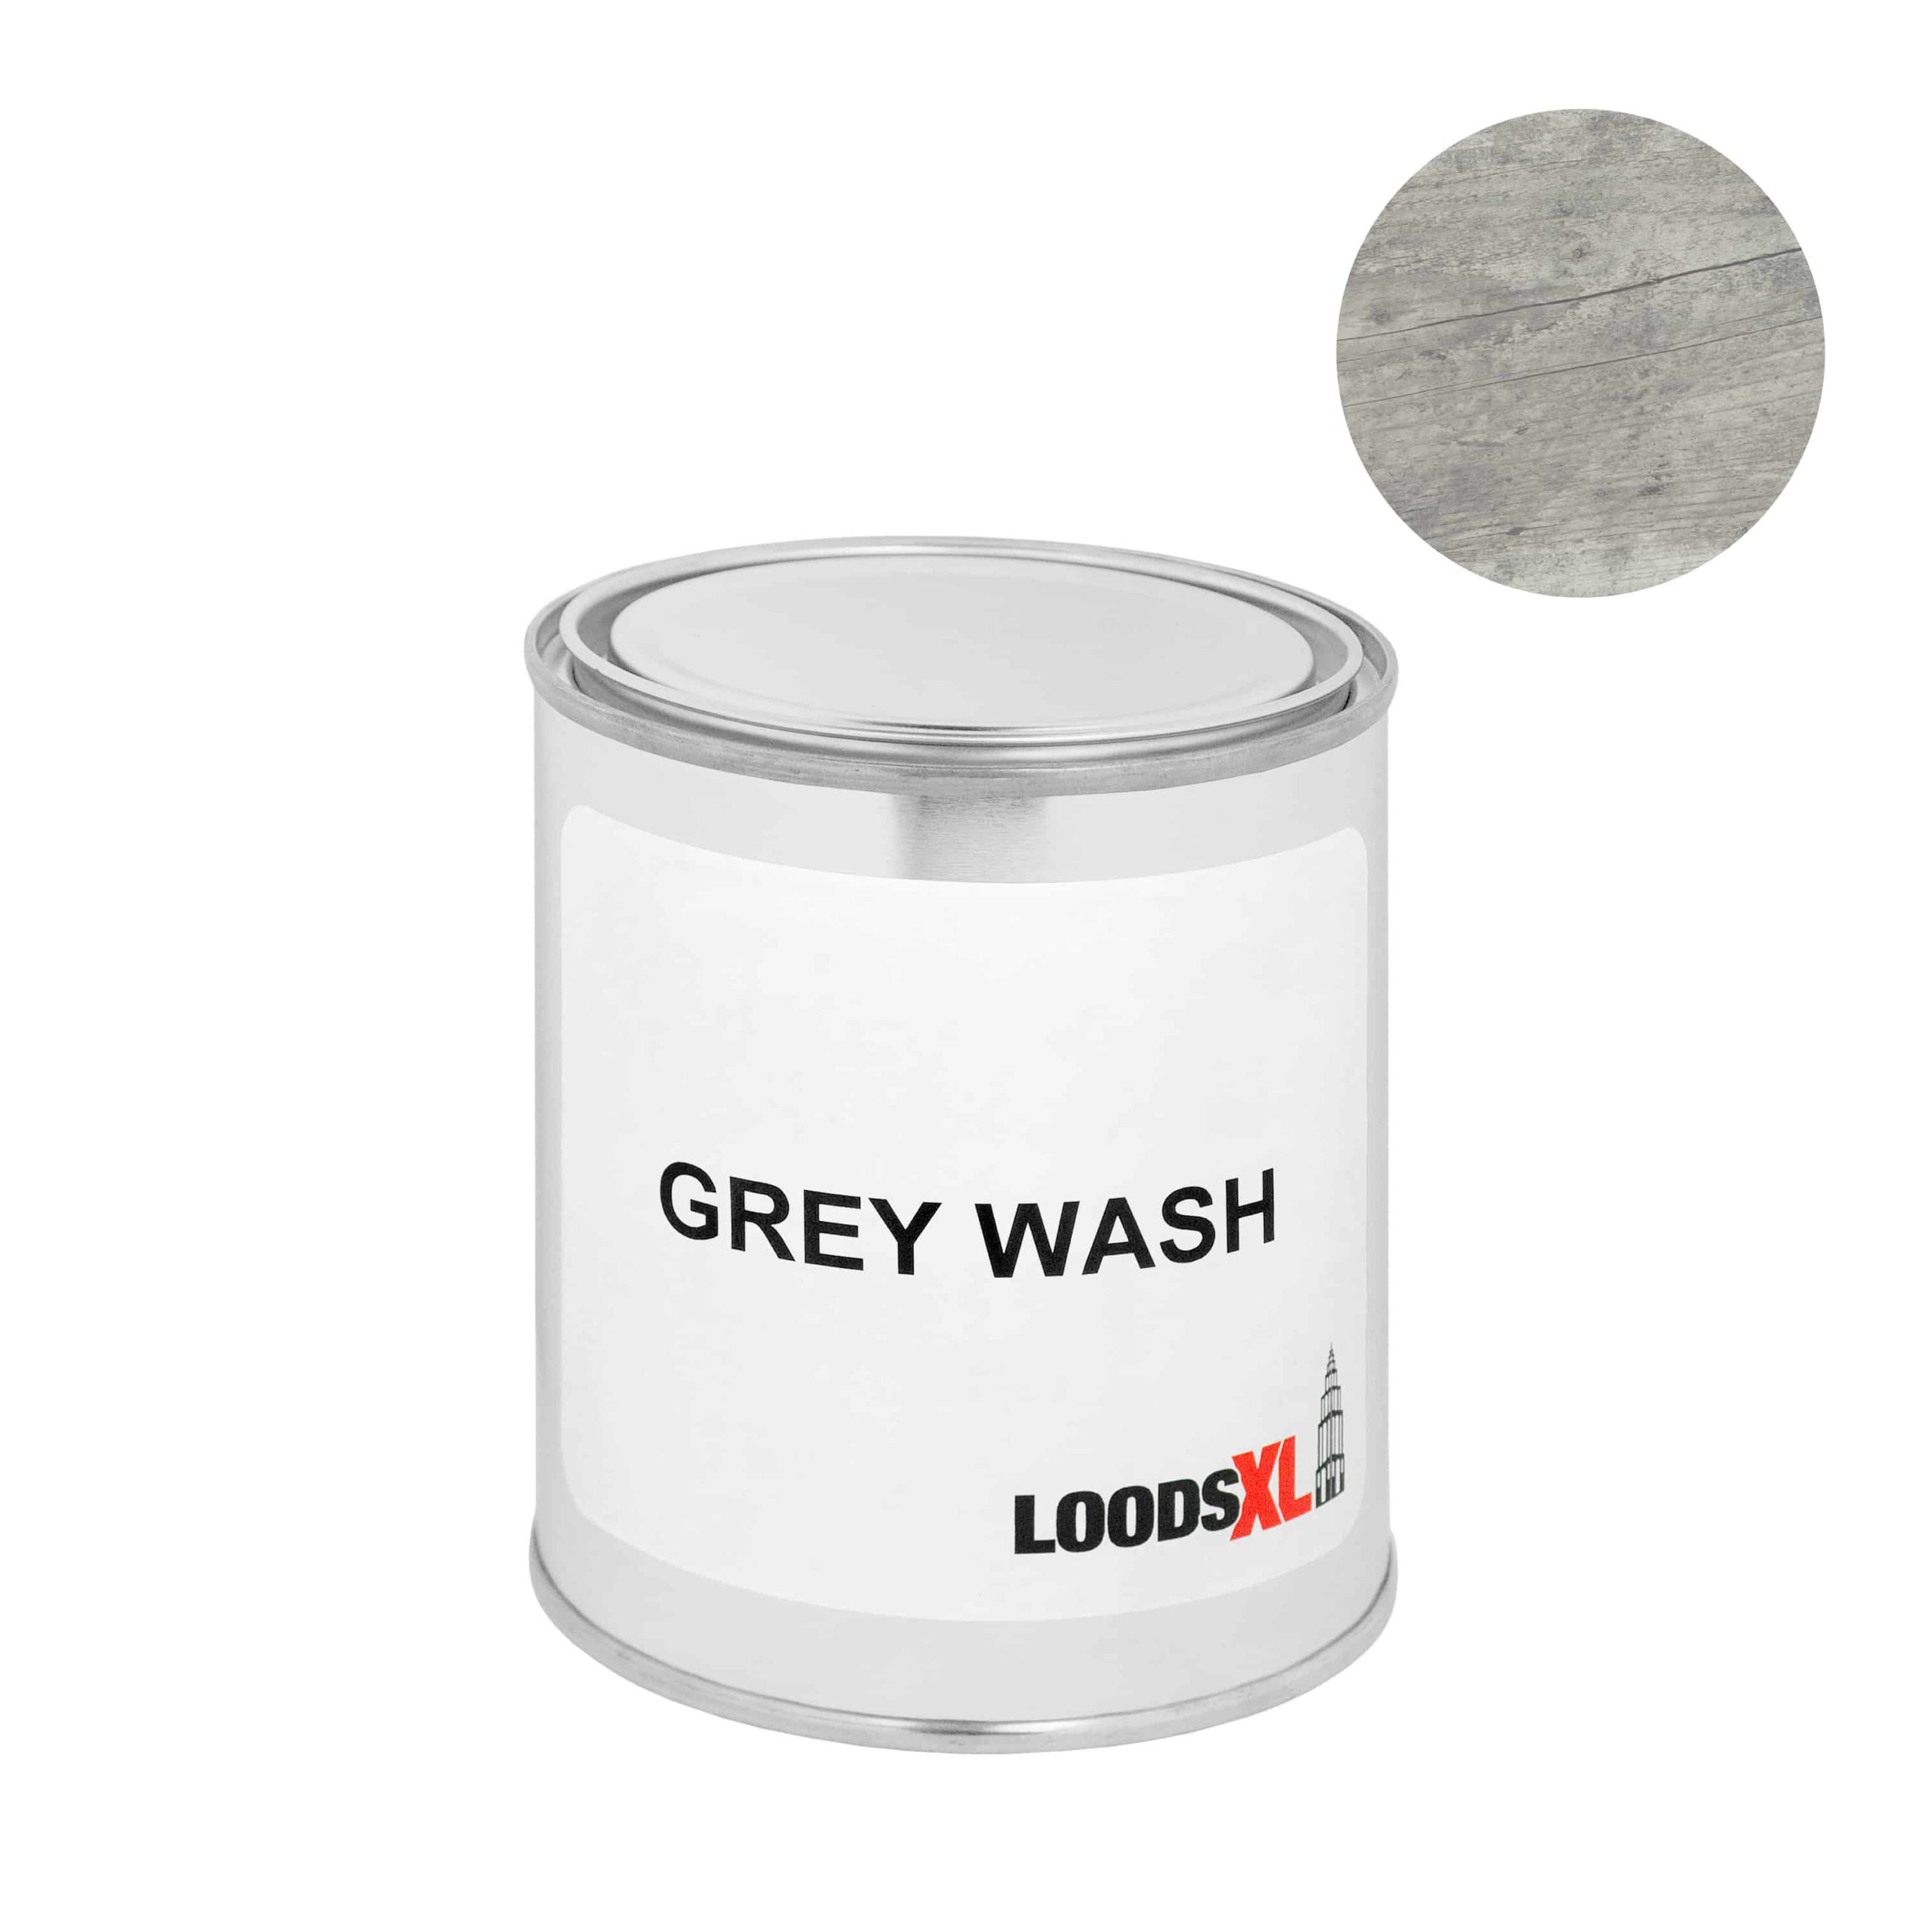 Grey wash